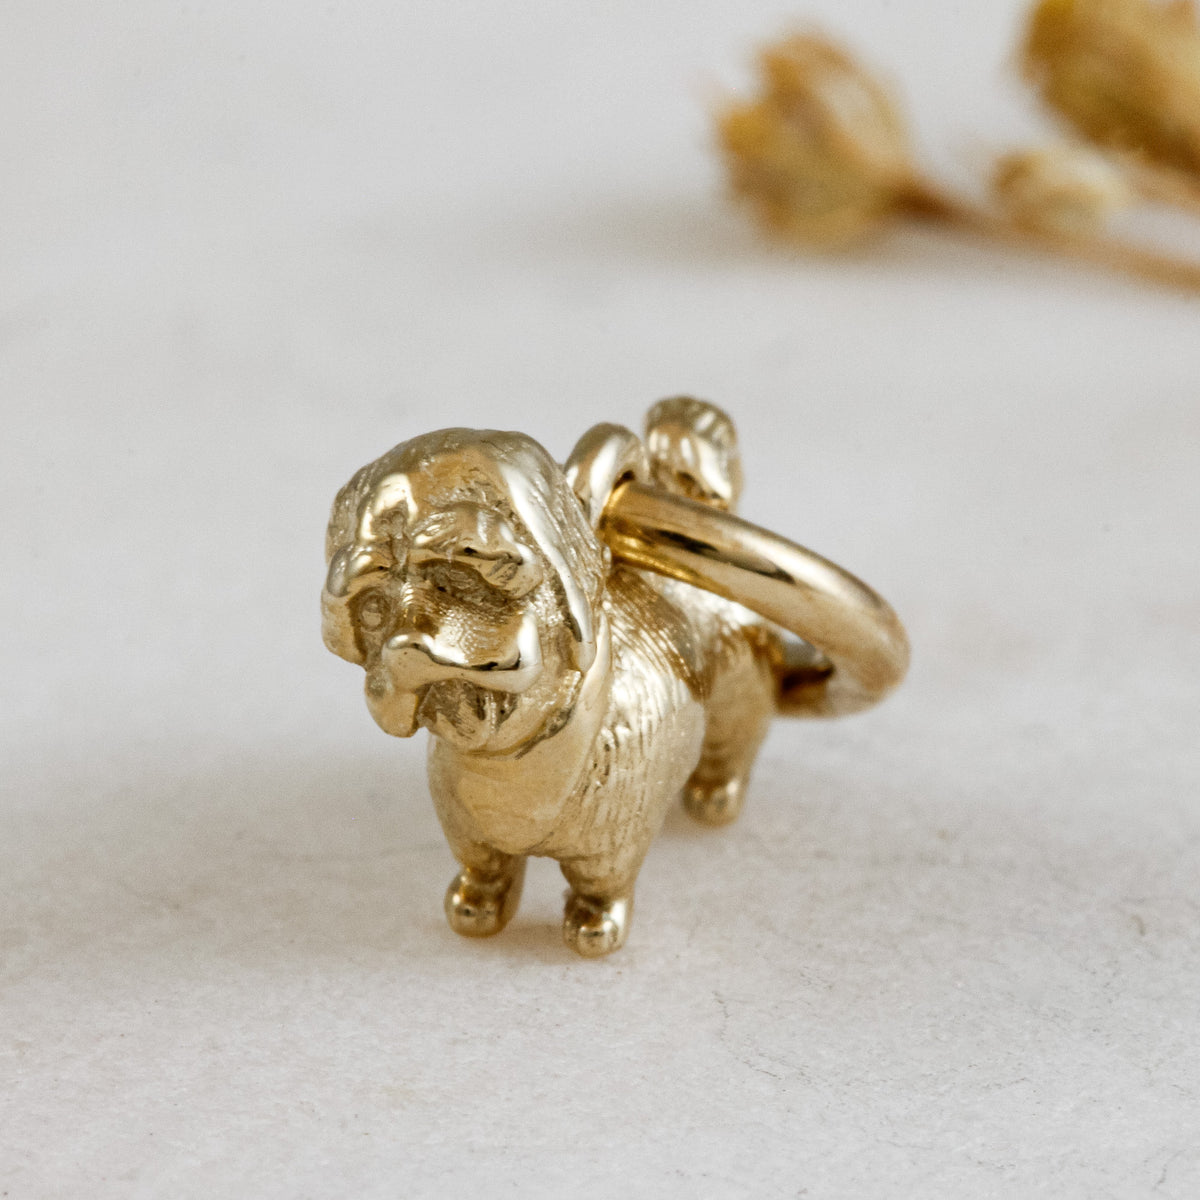 shih-tzu solid gold dog charm for a necklace or bracelet